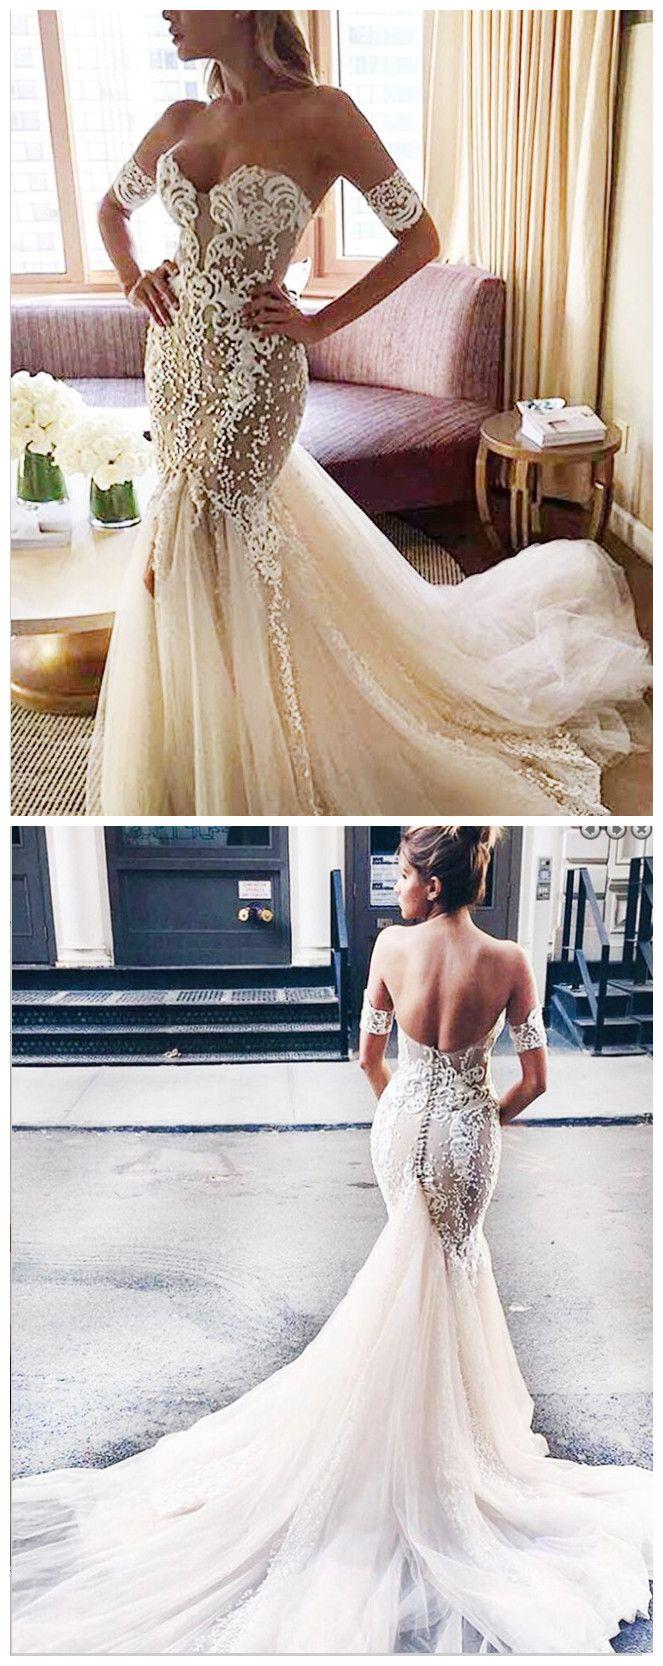 زفاف - Stylish Sweetheart Watteau Train Mermaid Wedding Dress With White Lace From Olesa Wedding Shop